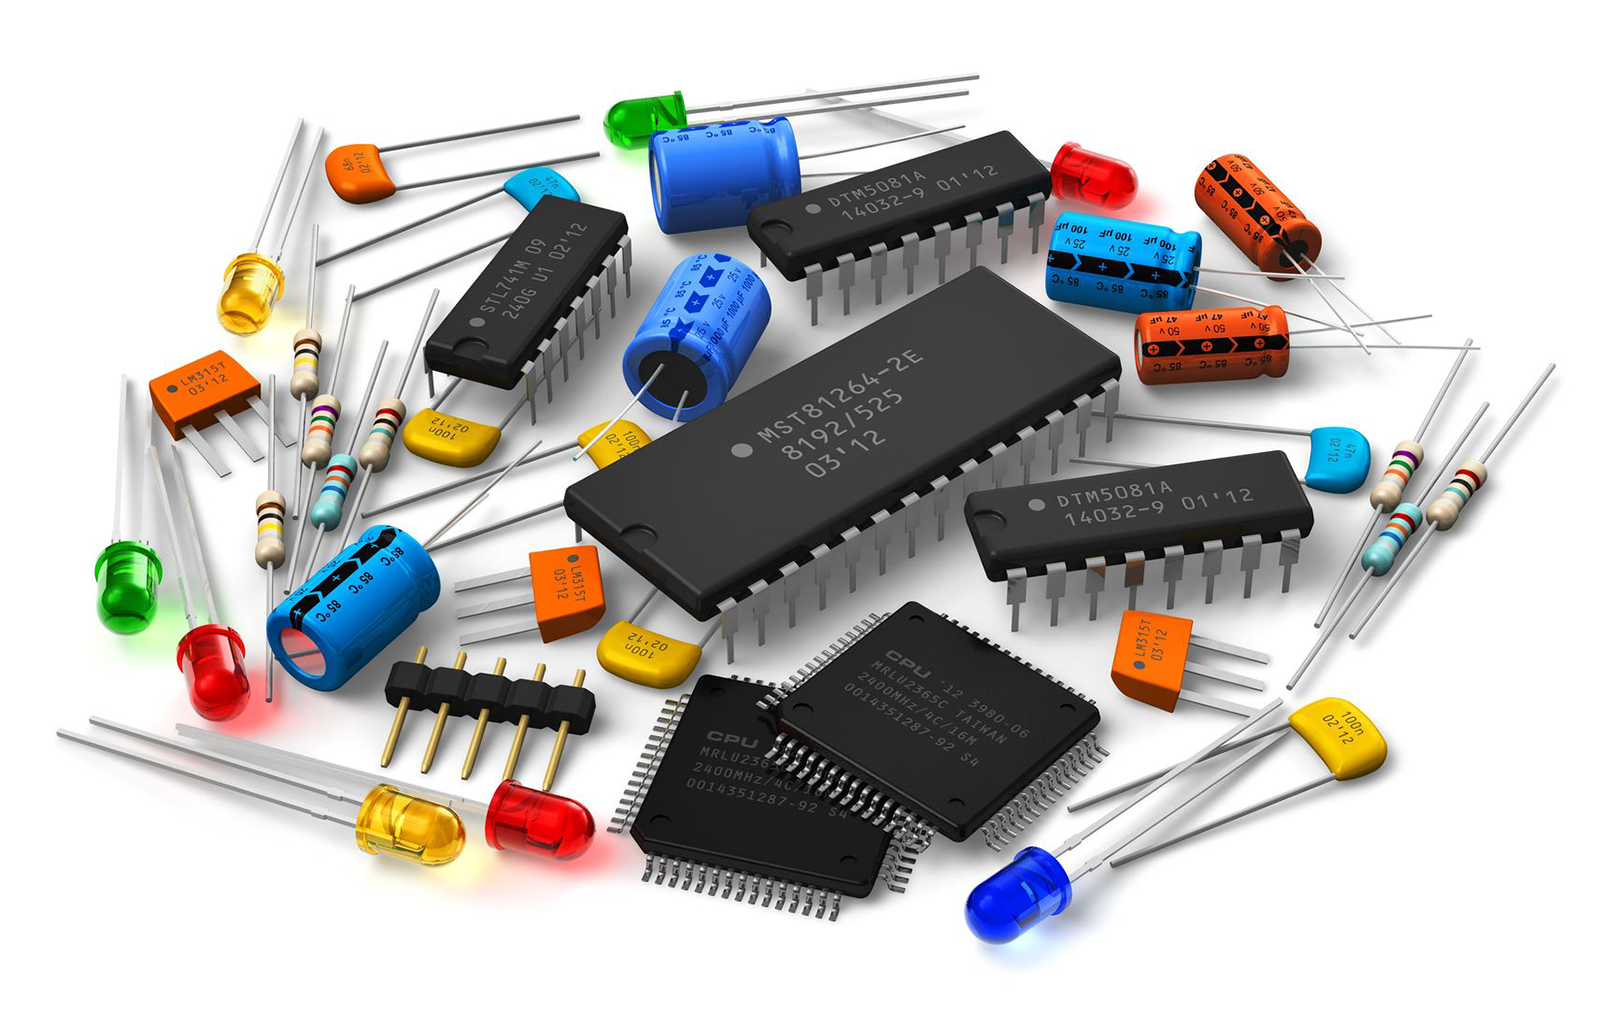 Product components. Радиодетали 3д82. Радиодетали чип 4558. Радиодетали fs801s. Микросхемы, транзисторы, диоды,резисторы ,конденсаторы.